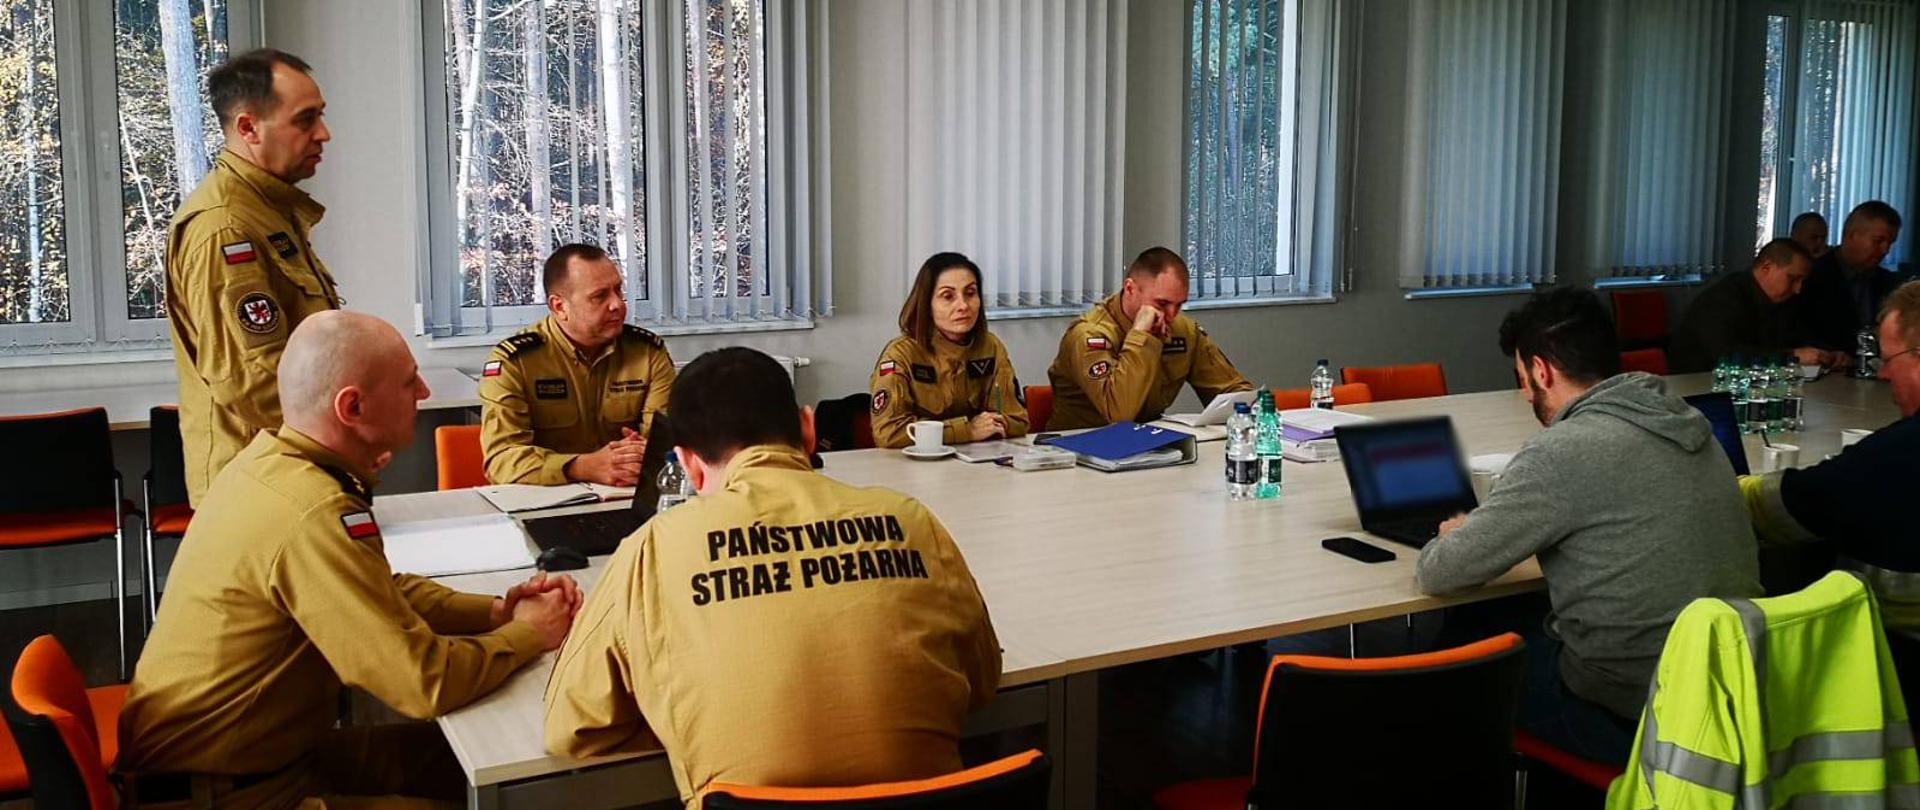 Zdjęcie przedstawia funkcjonariuszy Państwowej Straży Pożarnej oraz przedstawicieli innych służb w trakcie omawiania ćwiczeń. Wszyscy siedzą przy dużym stole. Widać stojącego Zachodniopomorskiego Komendanta PSP witającego wszystkich zgromadzonych oraz rozpoczynającego ćwiczenia.